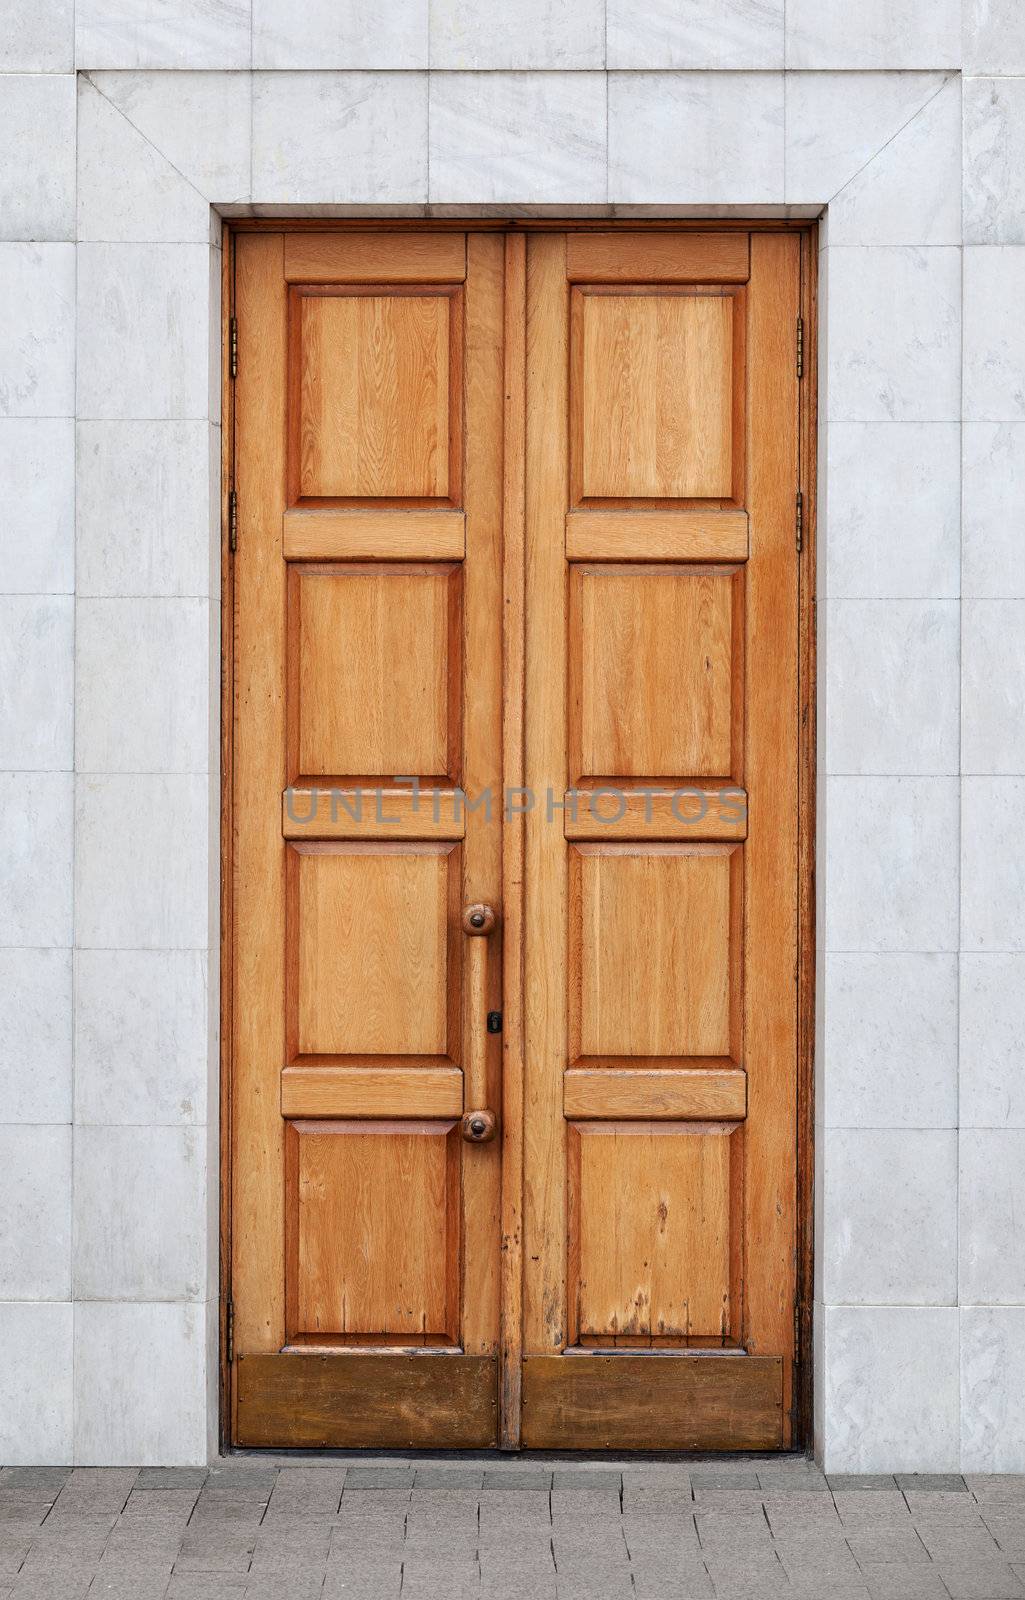 Old wooden door by pzaxe